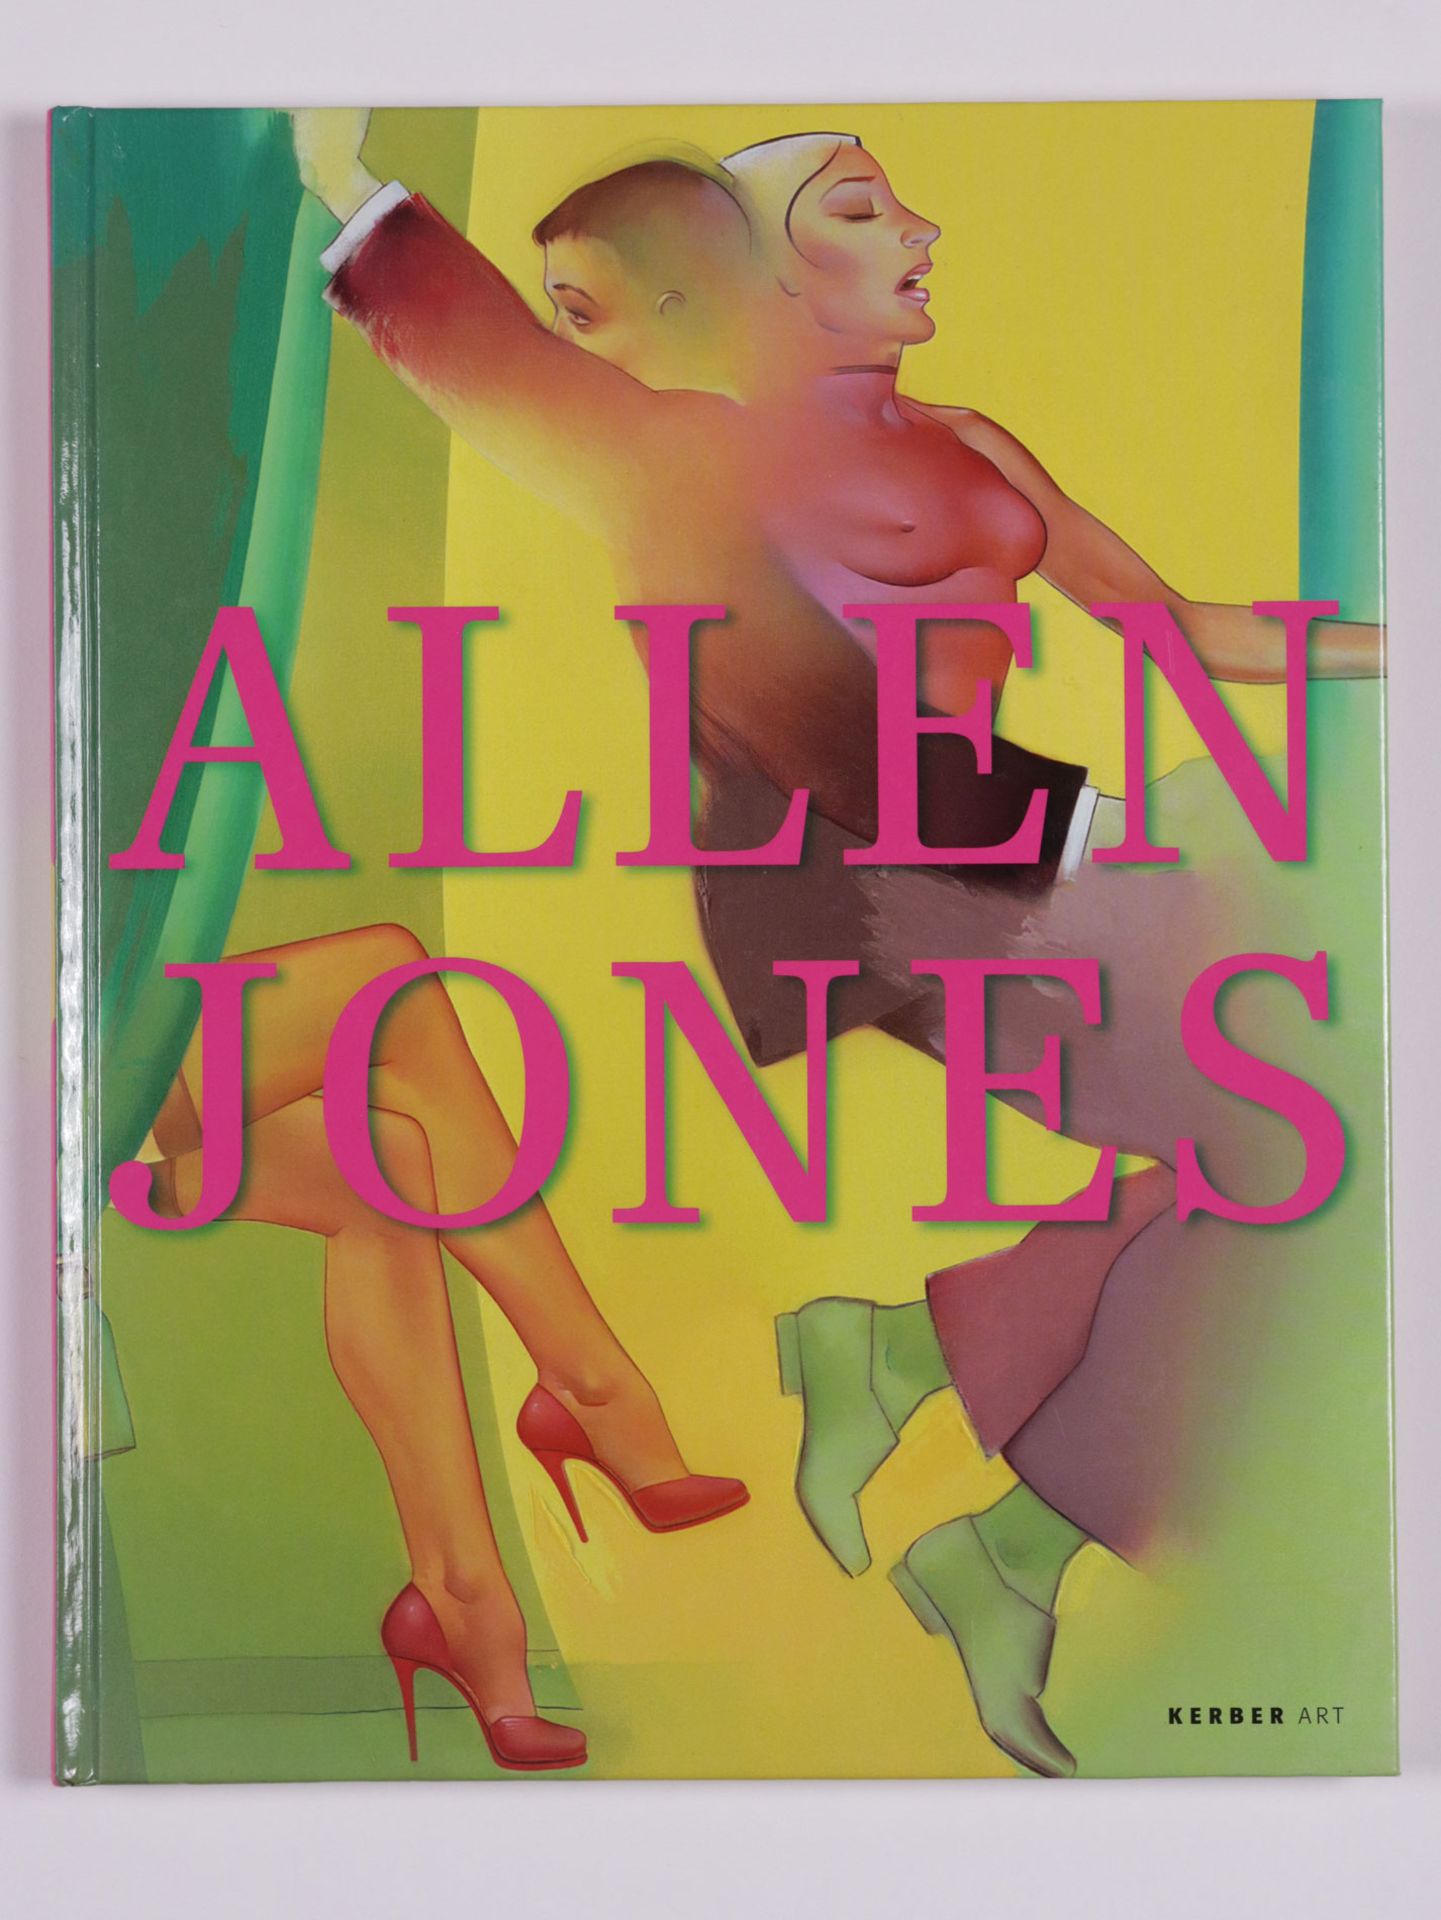 Jones, Allen - Image 14 of 19